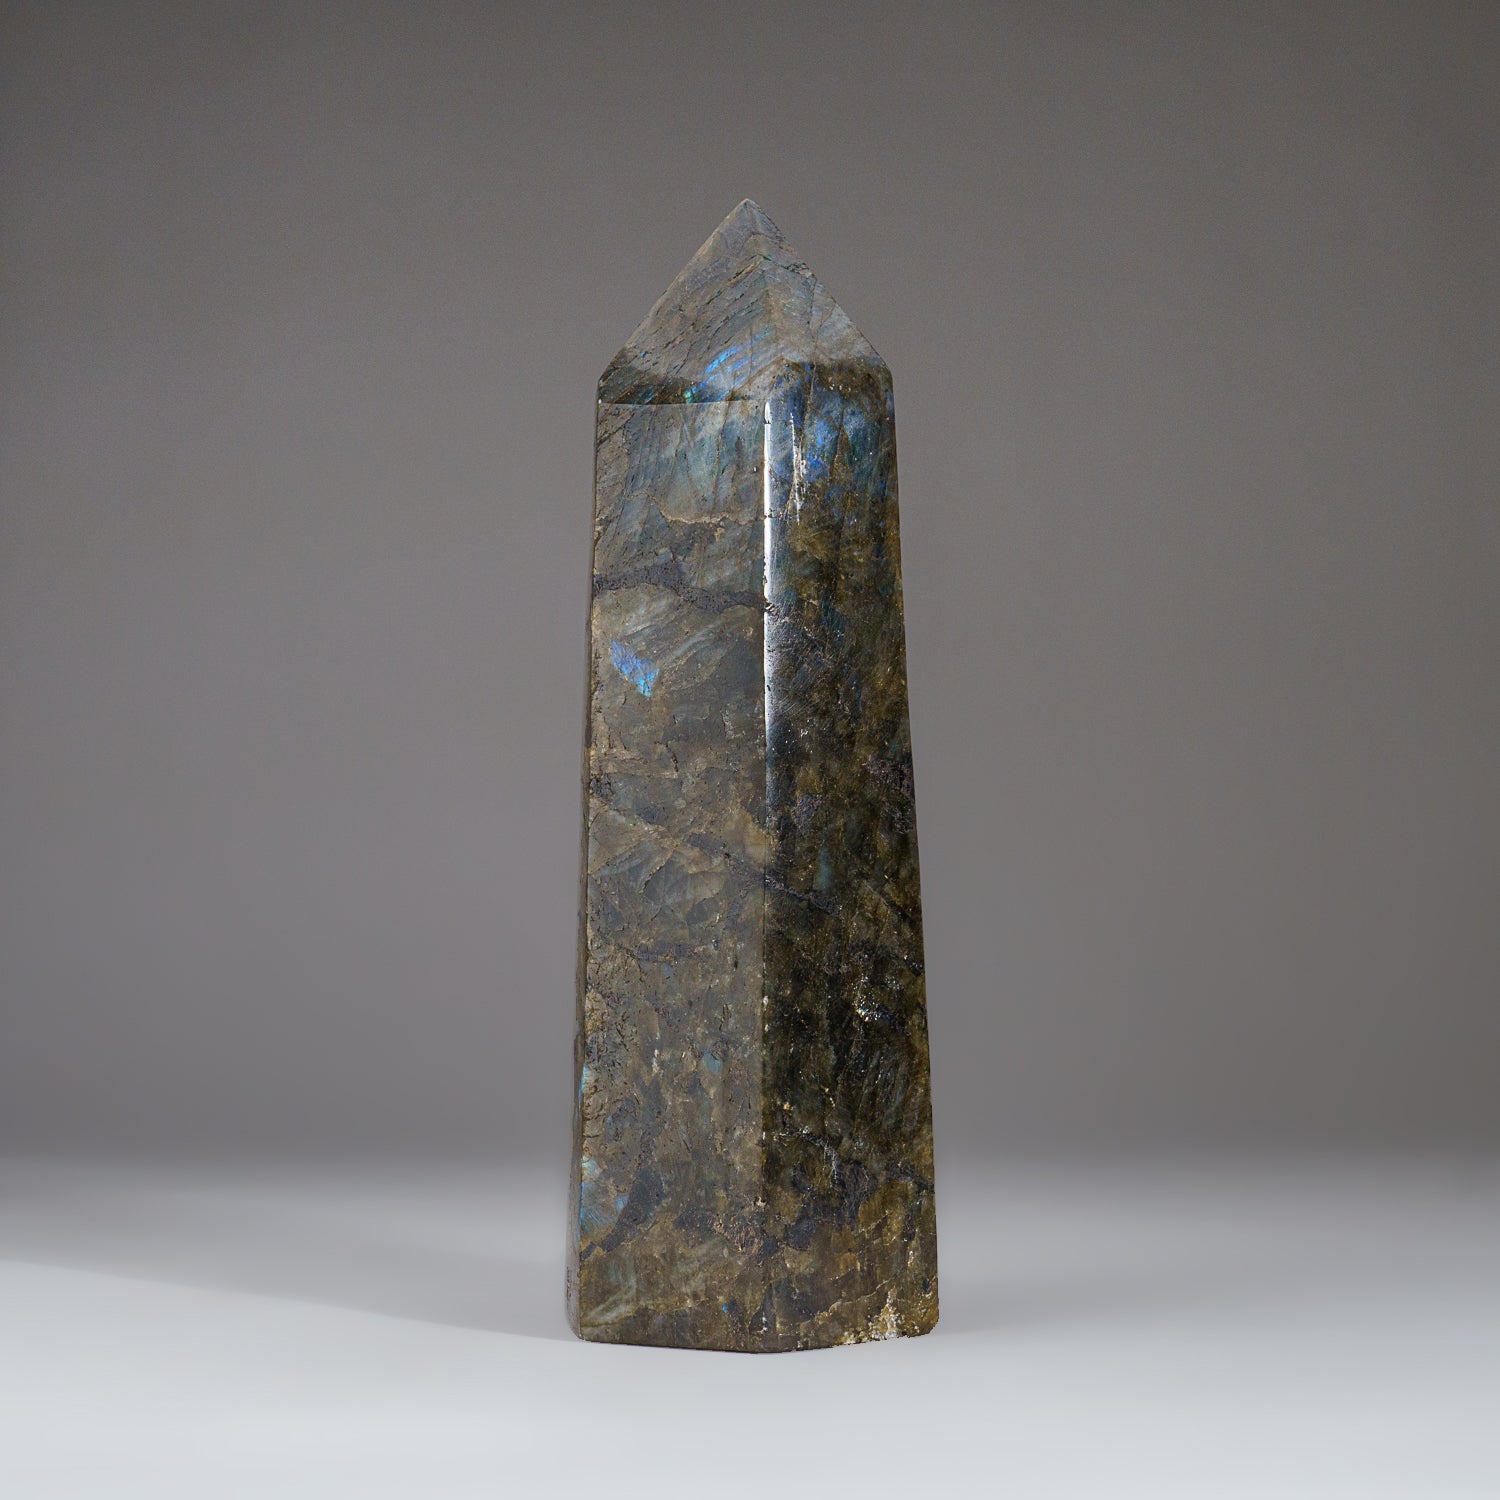 Polished Labradorite Obelisk from Madagascar (4.9 lbs)